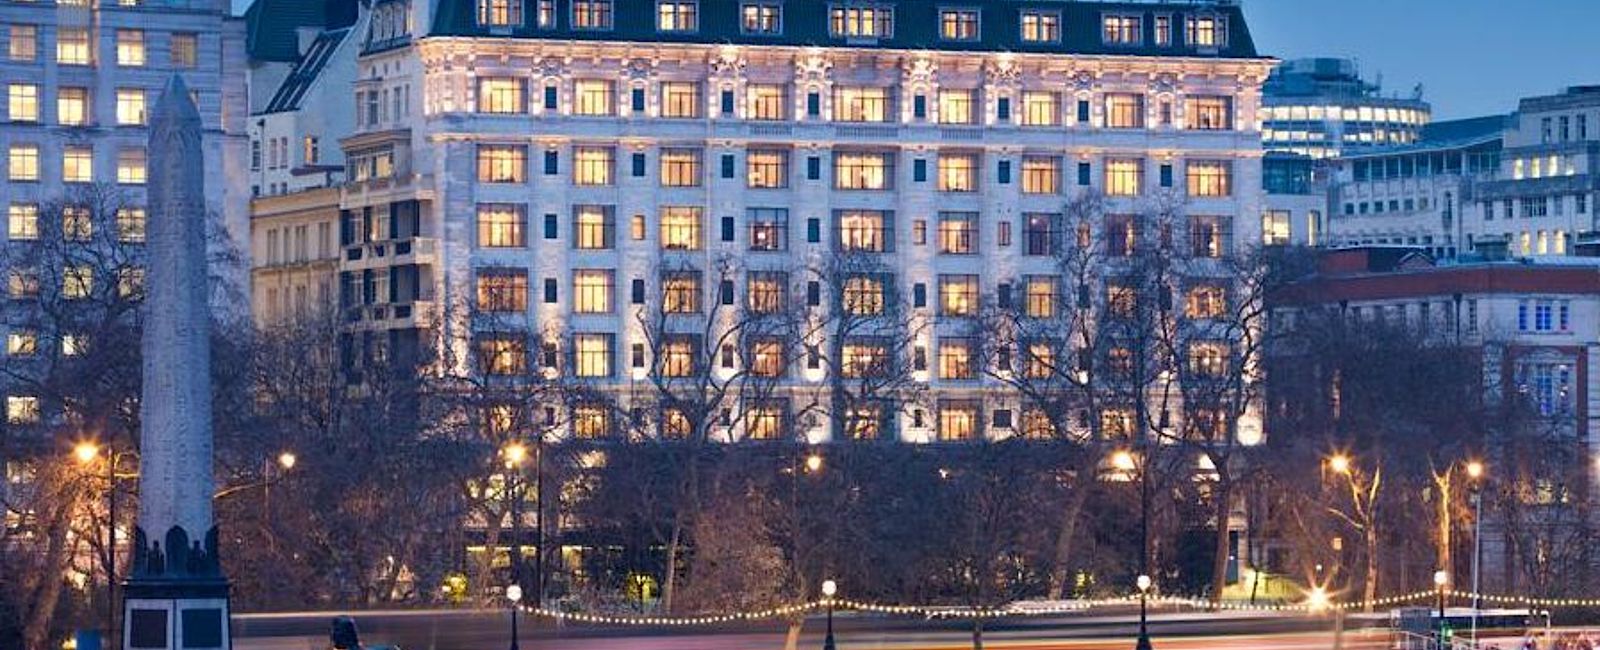 HOTELTEST
 The Savoy London 
 Renaissance einer Legende 